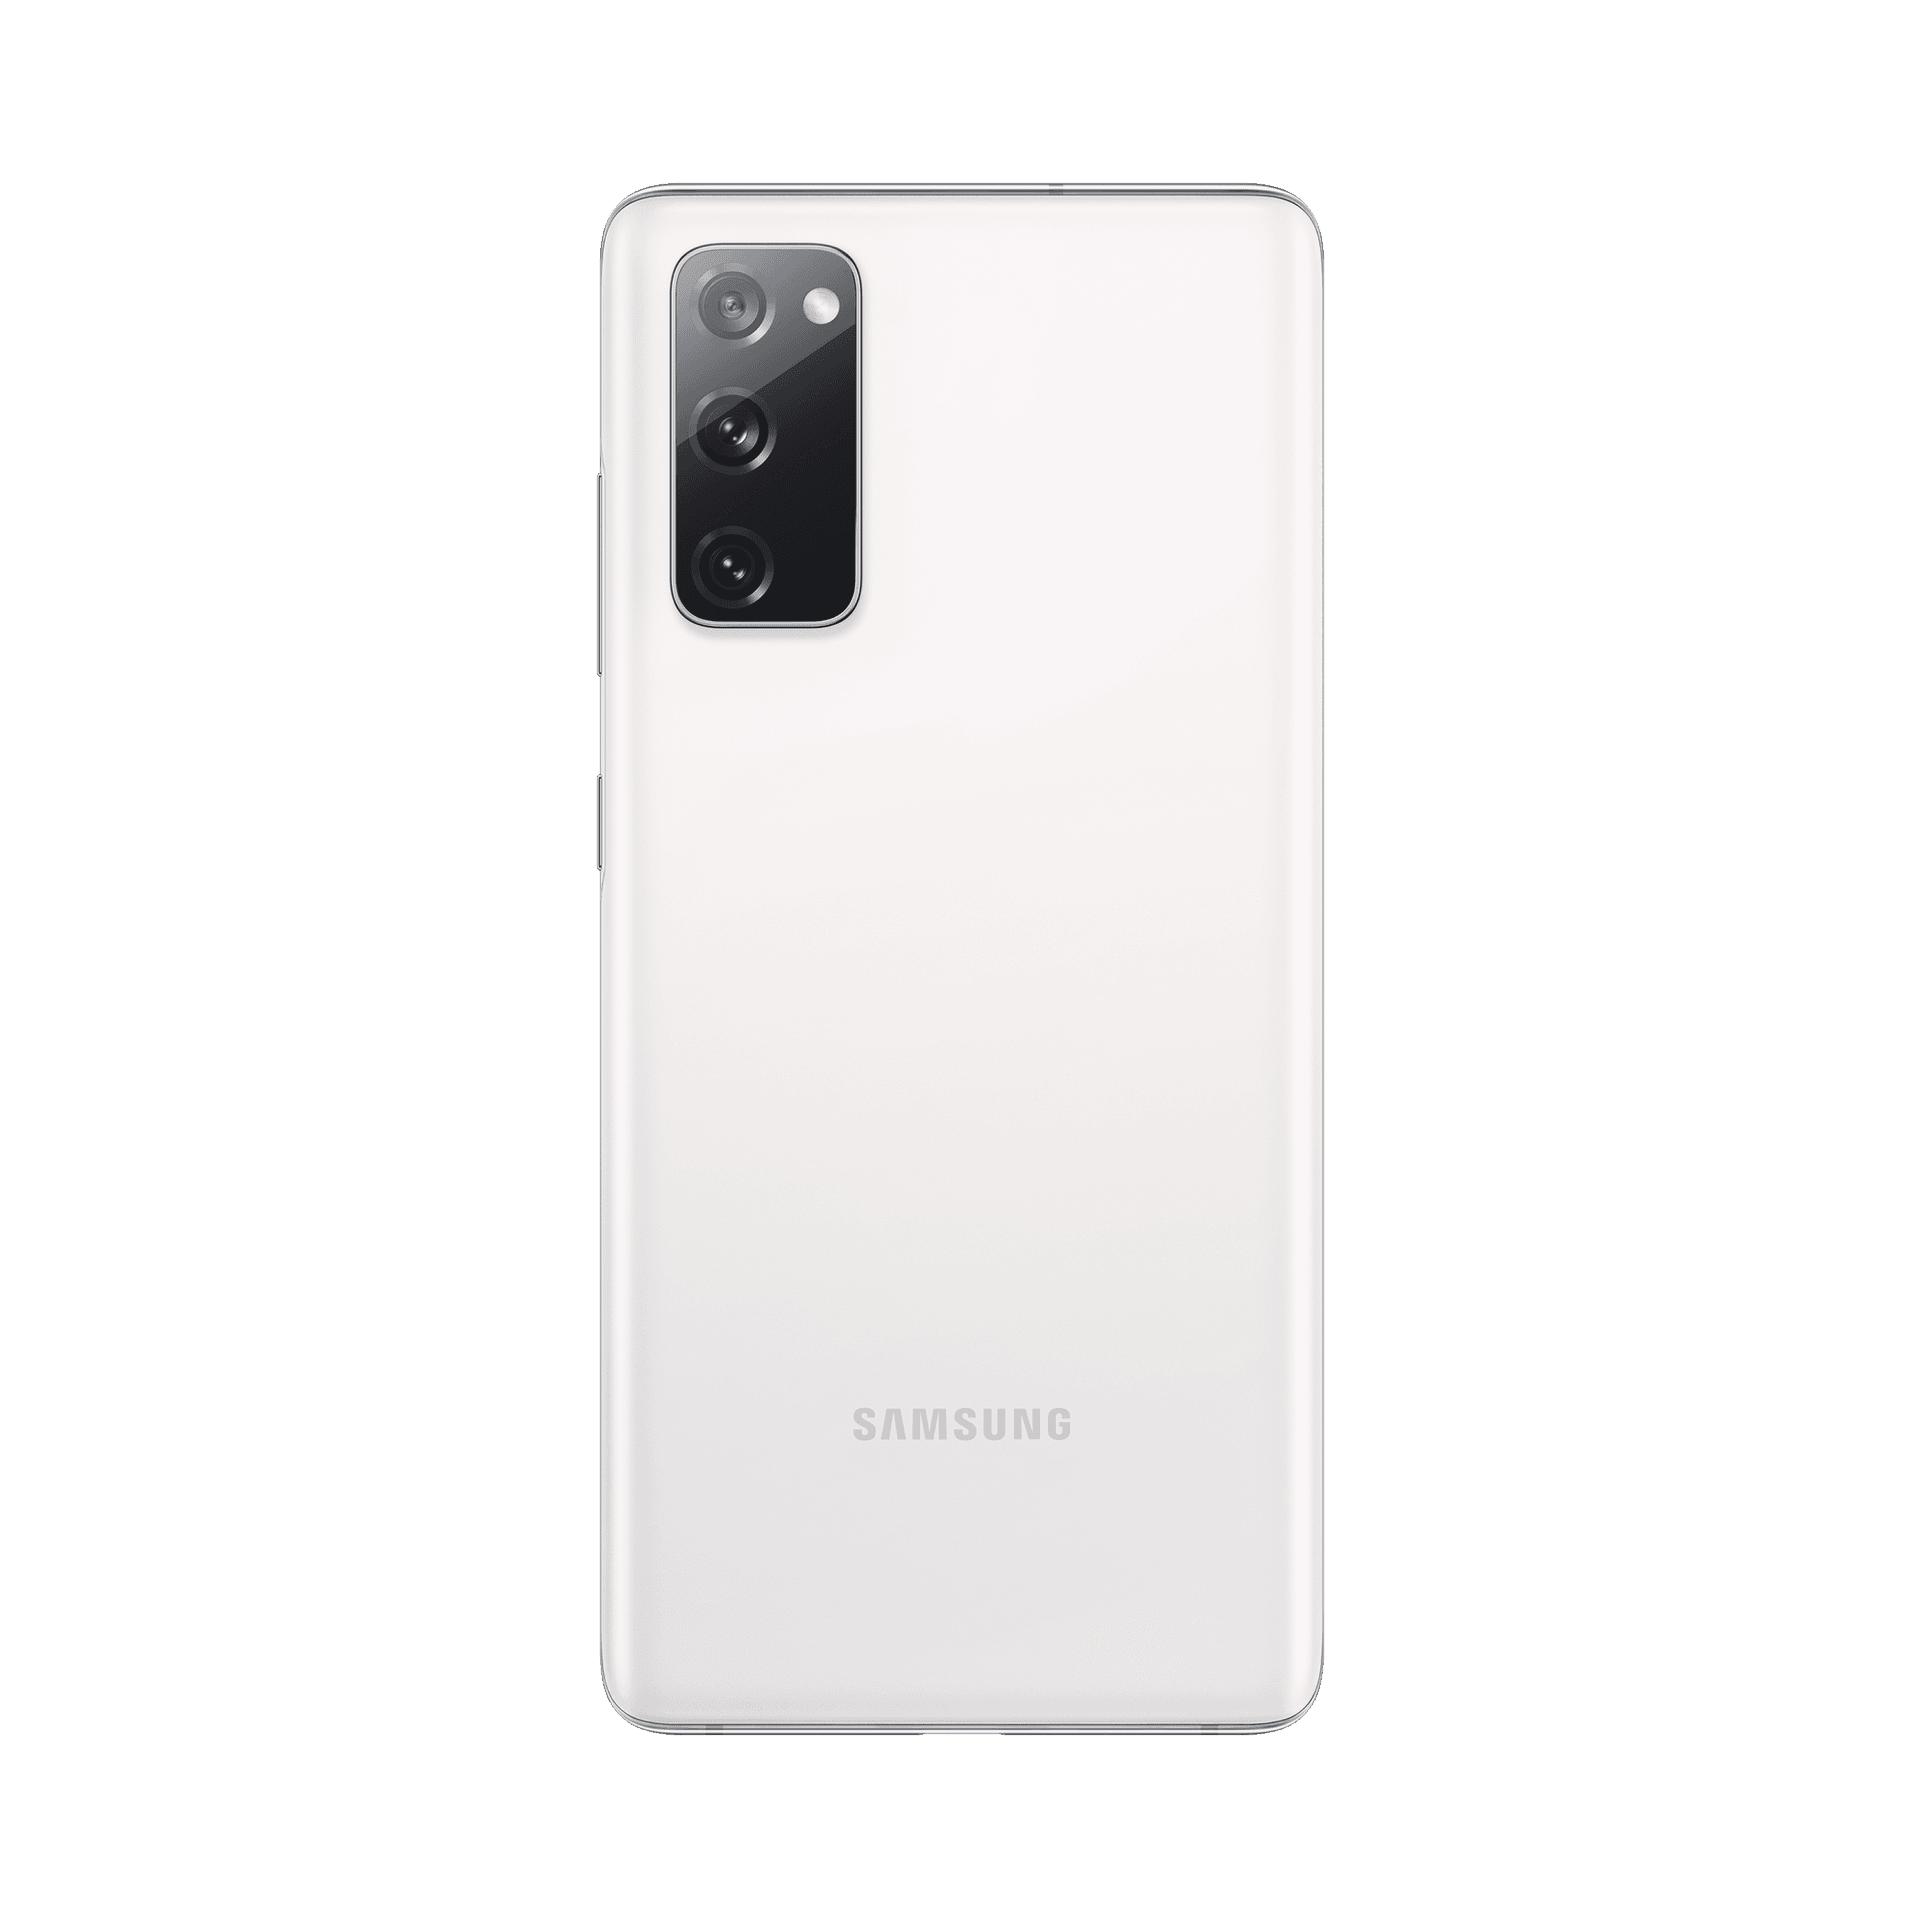 Samsung Galaxy S20 fe - 128 GB - Bulut Beyazı